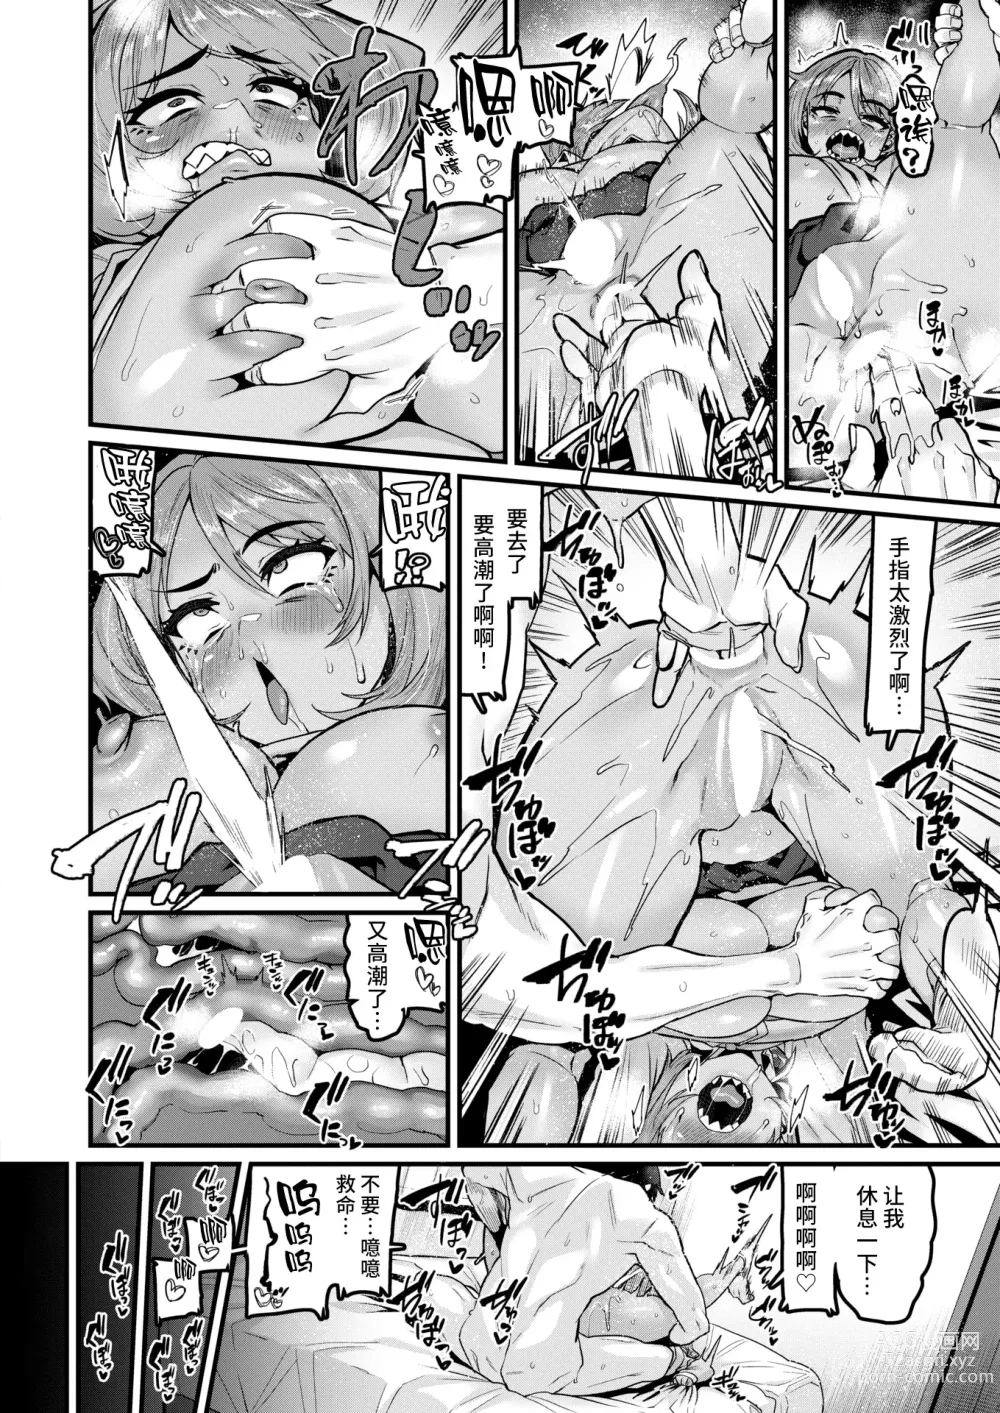 Page 16 of manga Tarinai Mono wa Oginatte!